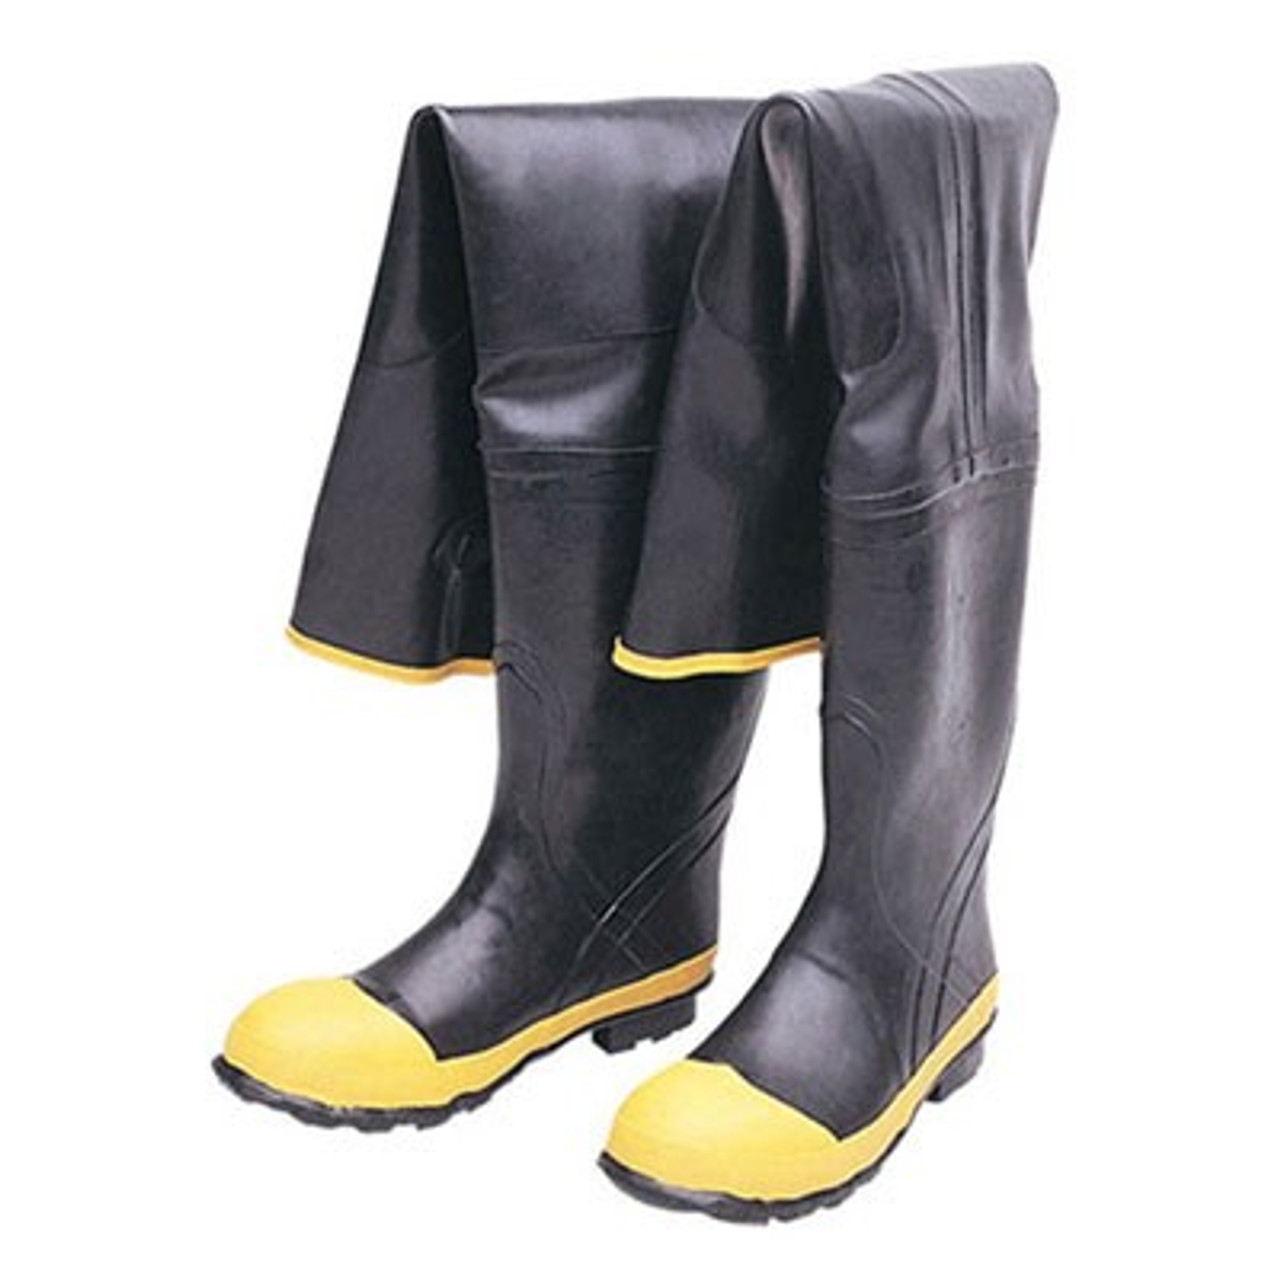 waterproof hip boots